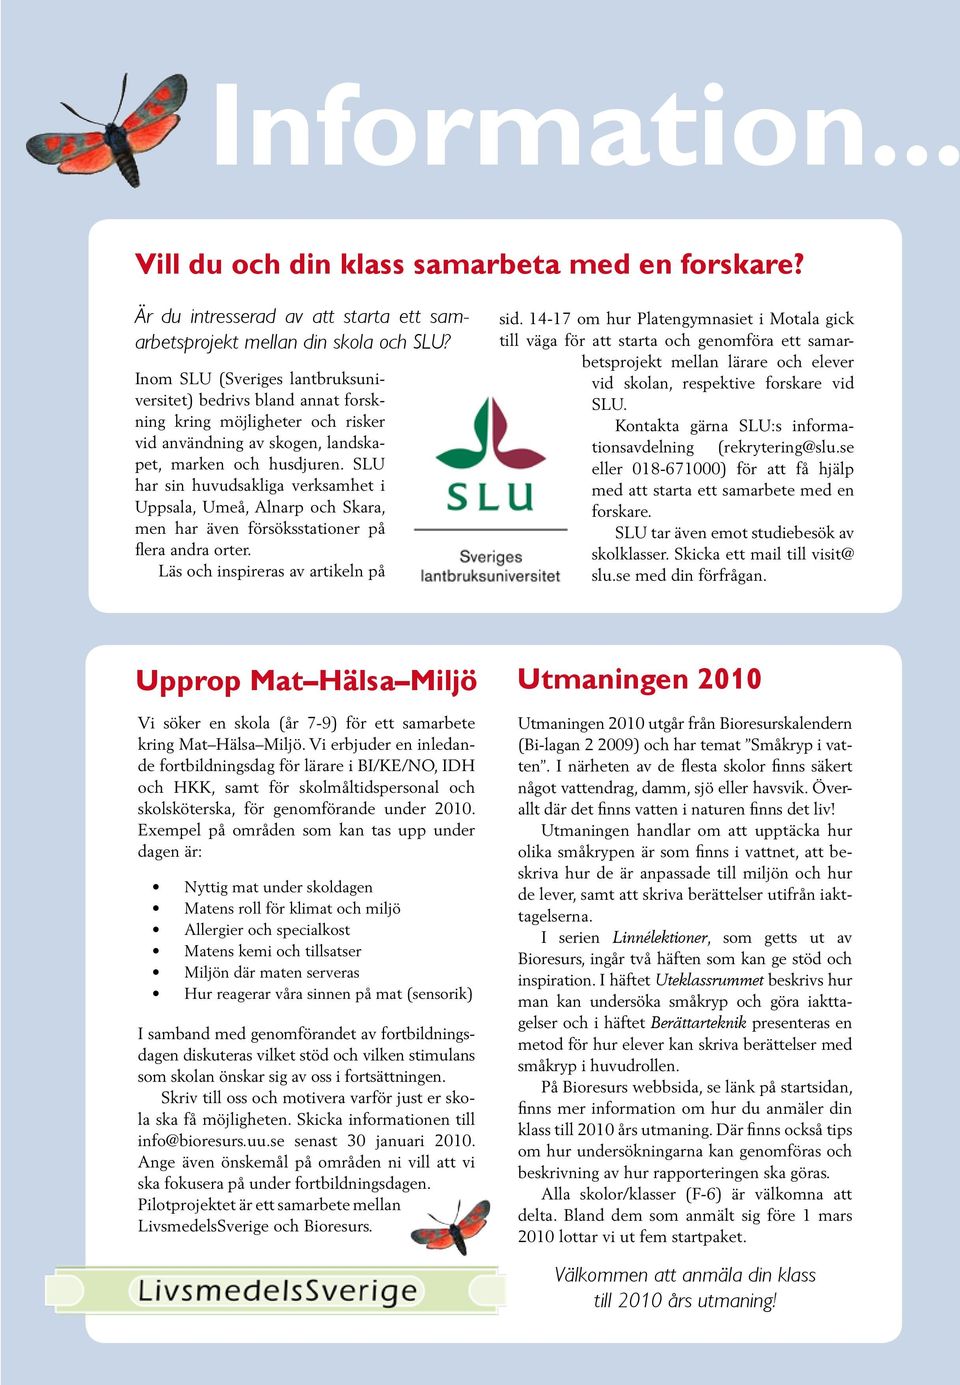 SLU har sin huvudsakliga verksamhet i Uppsala, Umeå, Alnarp och Skara, men har även försöksstationer på flera andra orter. Läs och inspireras av artikeln på sid.